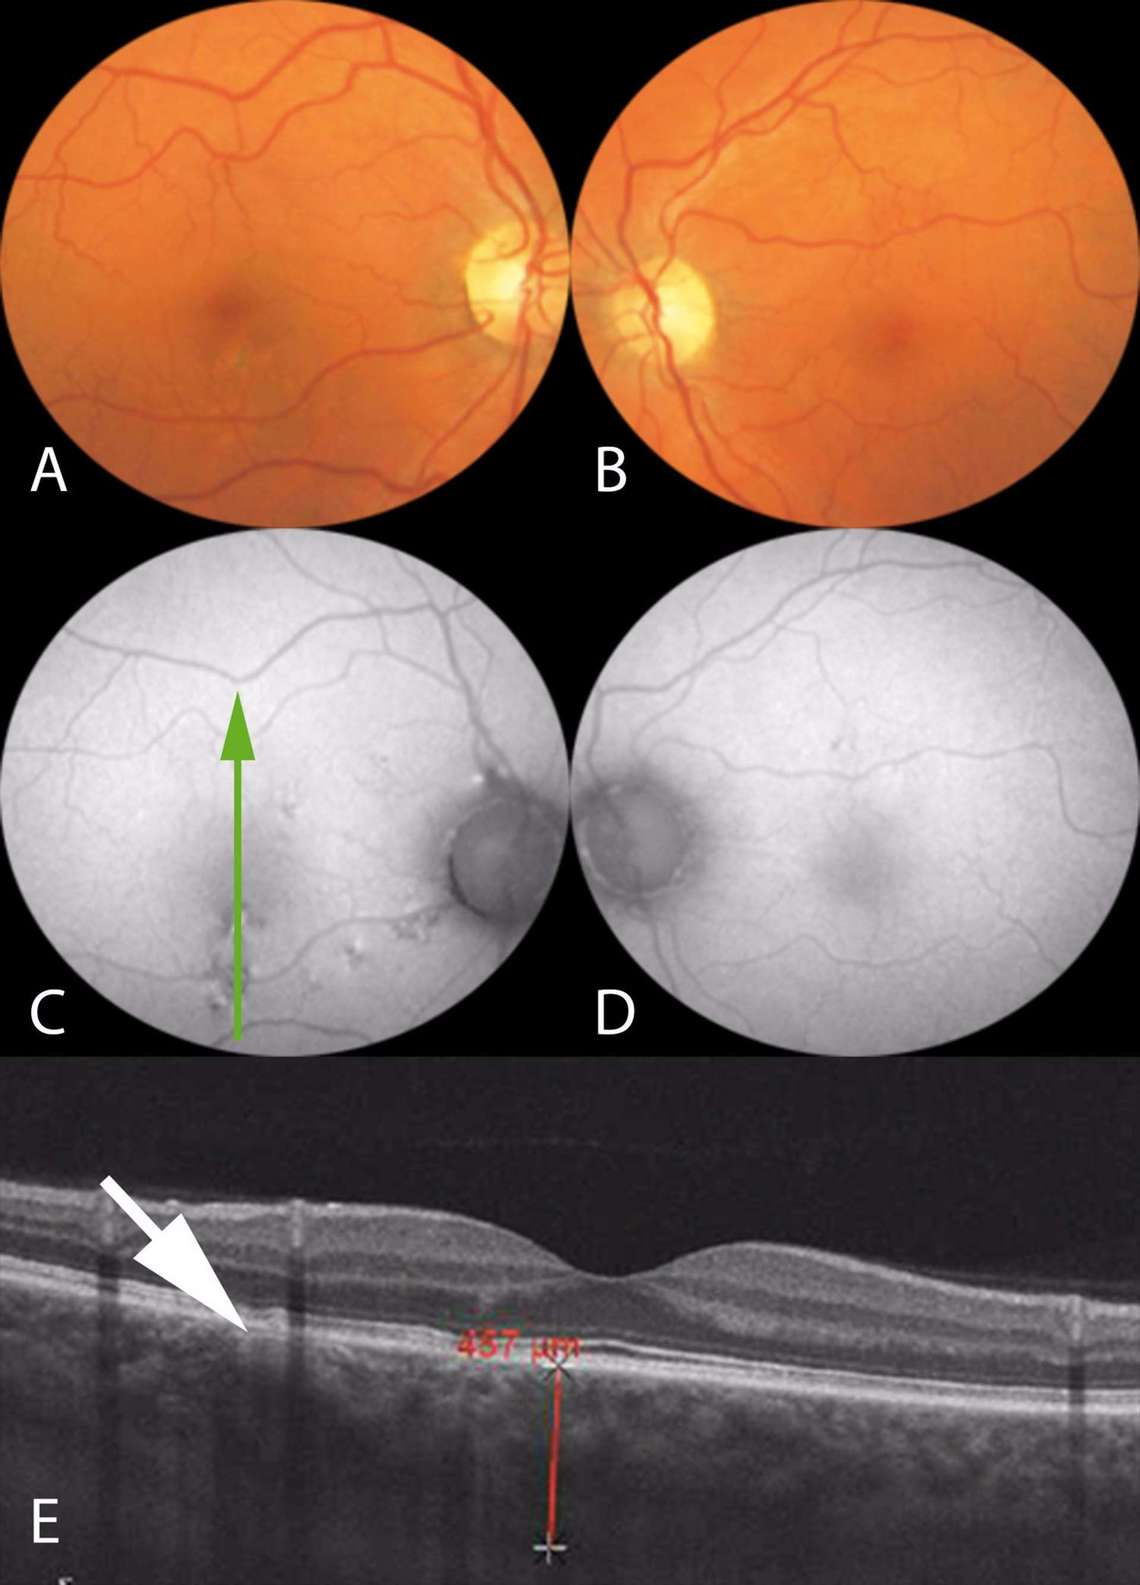 Figure 1. Imagerie multimodale d’un patient de 45 ans ayant consulté pour des métamorphopsies modérées de l’œil droit sans baisse d’acuité visuelle, avec rétinophotos couleur (A, B), clichés en autofluorescence (C, D) et coupe verticale fovéolaire en OCT en mode EDI de l’œil droit (E). Au niveau de l’œil droit, on note des migrations pigmentaires inféromaculaires sur le cliché couleur (A), hyper-autofluorescentes (B), qui correspondent à des irrégularités minimes des couches profondes en OCT au niveau d’un pachyvaisseau choroïdien (flèche blanche, E). L’épaisseur choroïdienne fovéolaire est mesurée à plus de 450 microns. Au niveau de l’œil gauche, le patient présentait un fond d’œil sans anomalie significative en couleur ou en autofluorescence (B, D) et une pachychoroïde sur l’OCT (non montrée).
